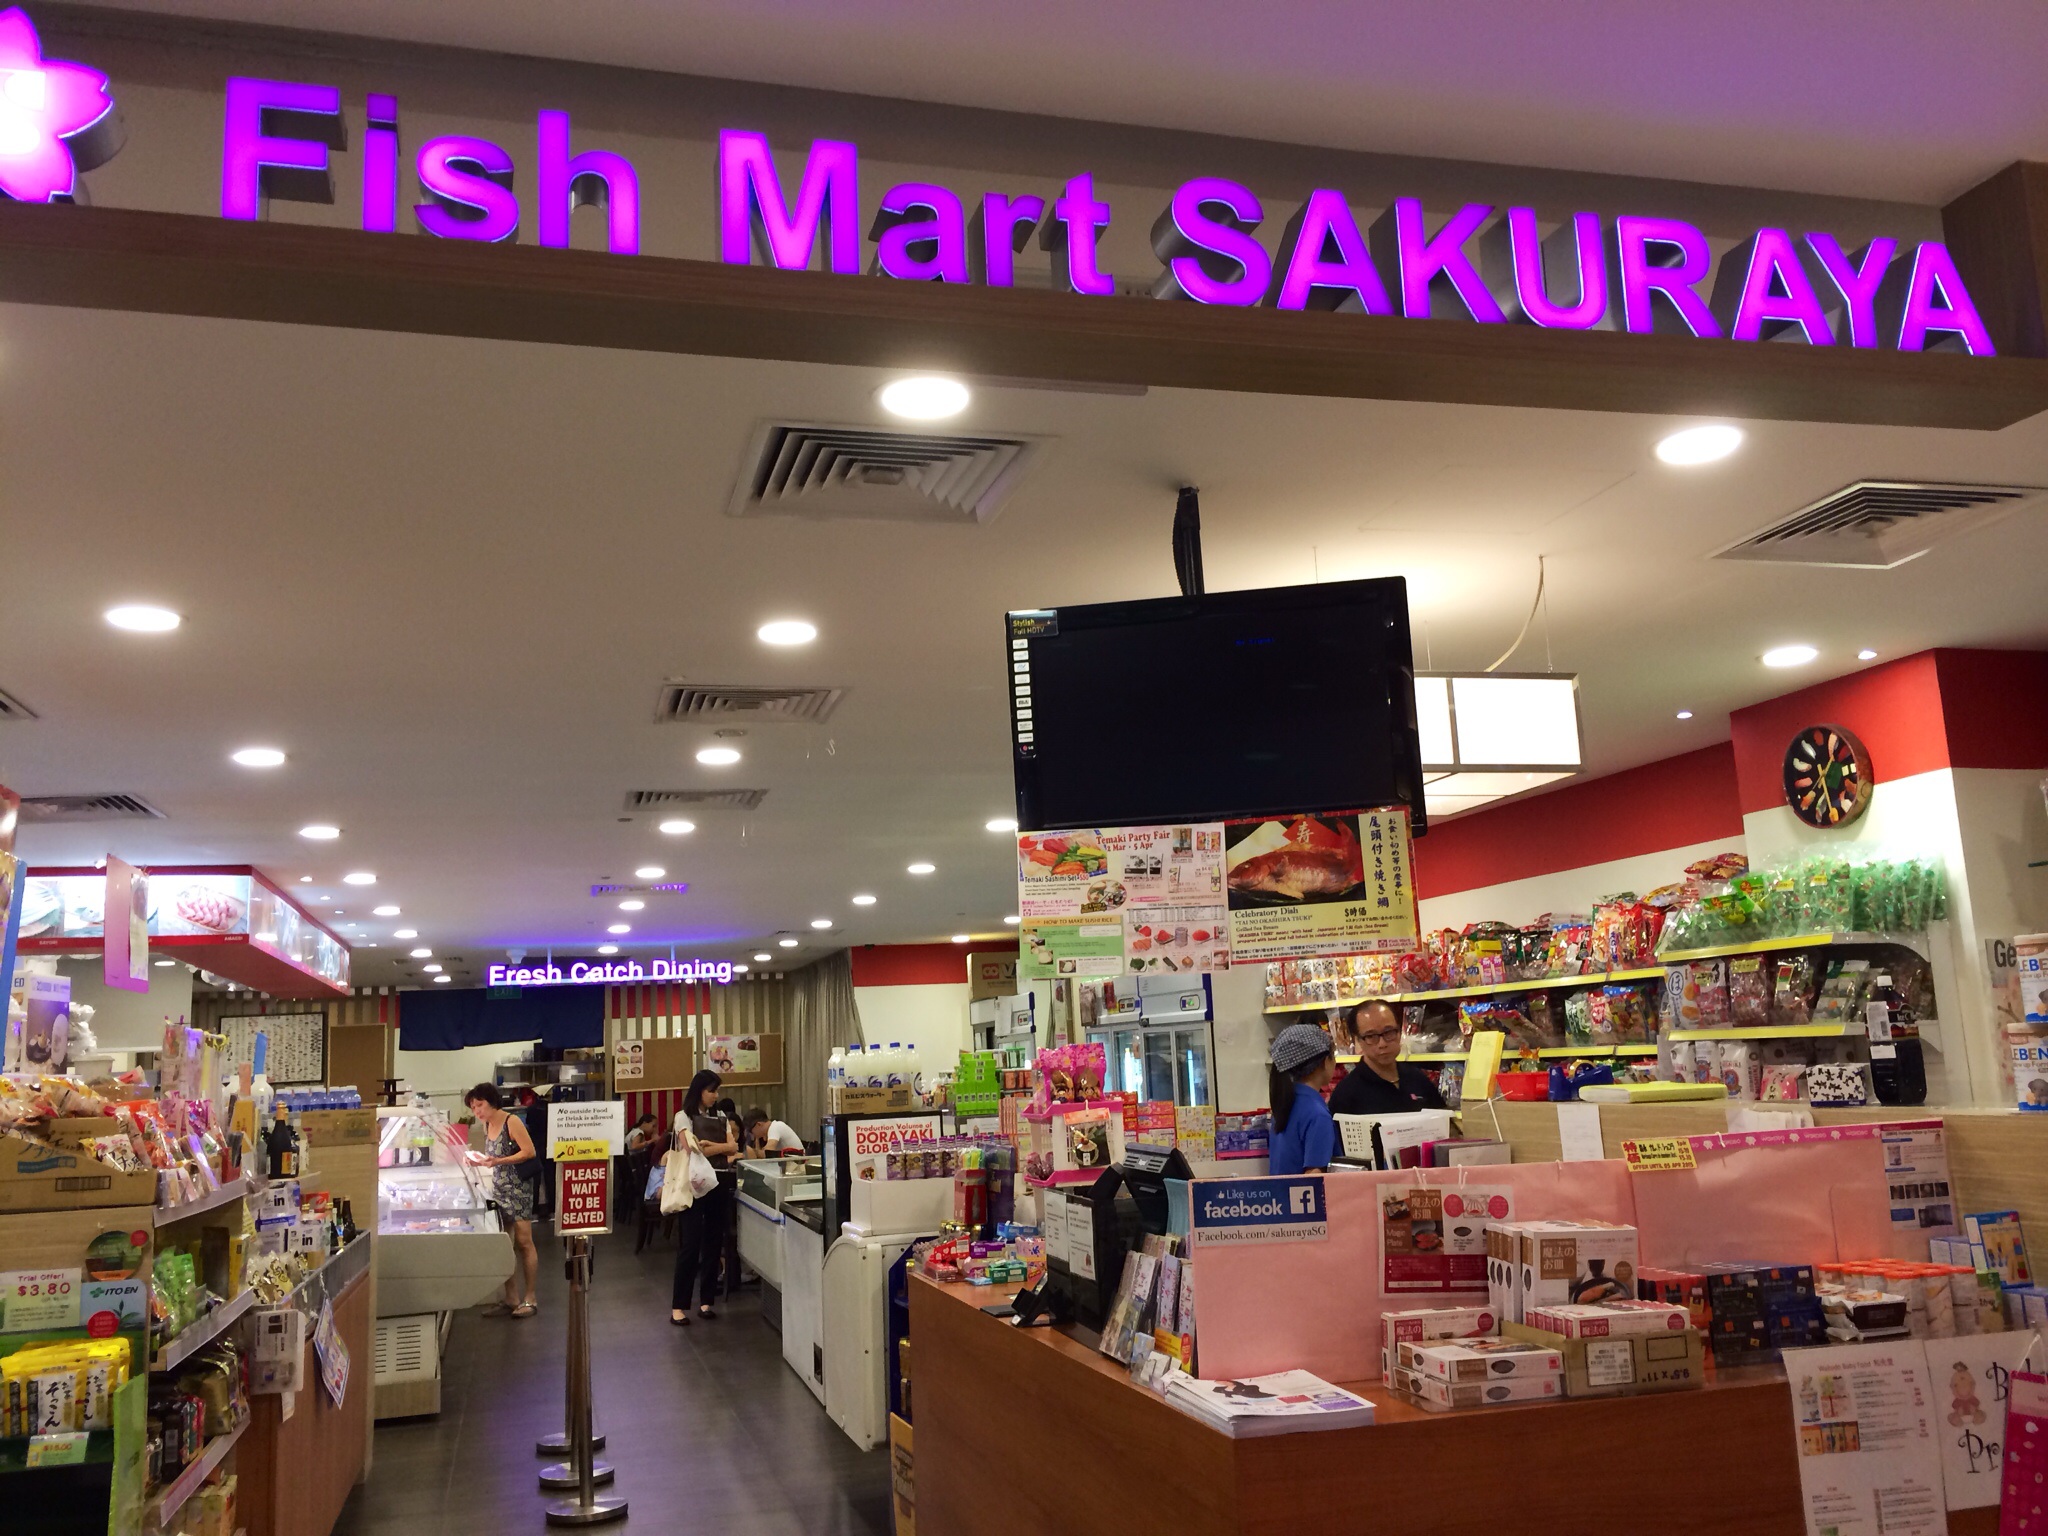 Fish Mart Sakuraya Store